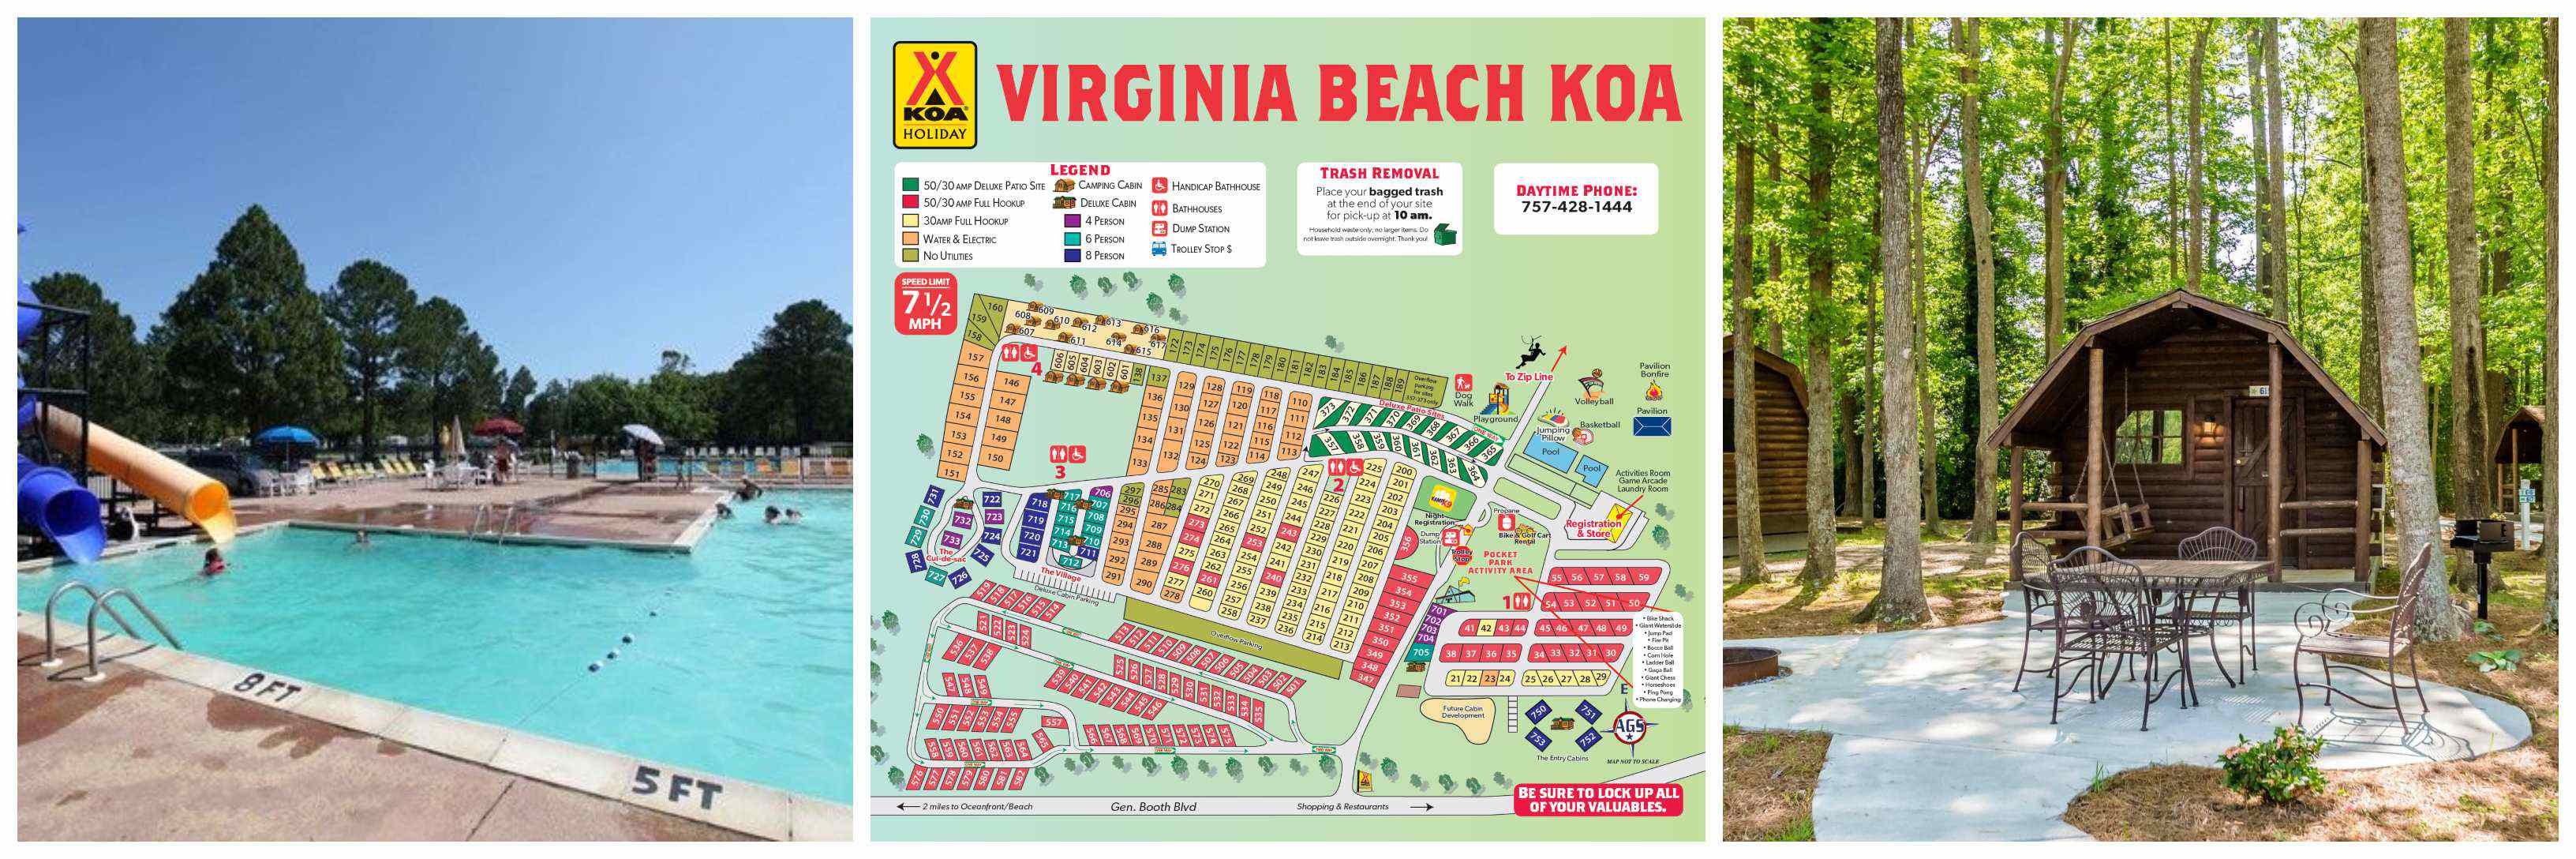 Virginia Beach Koa 